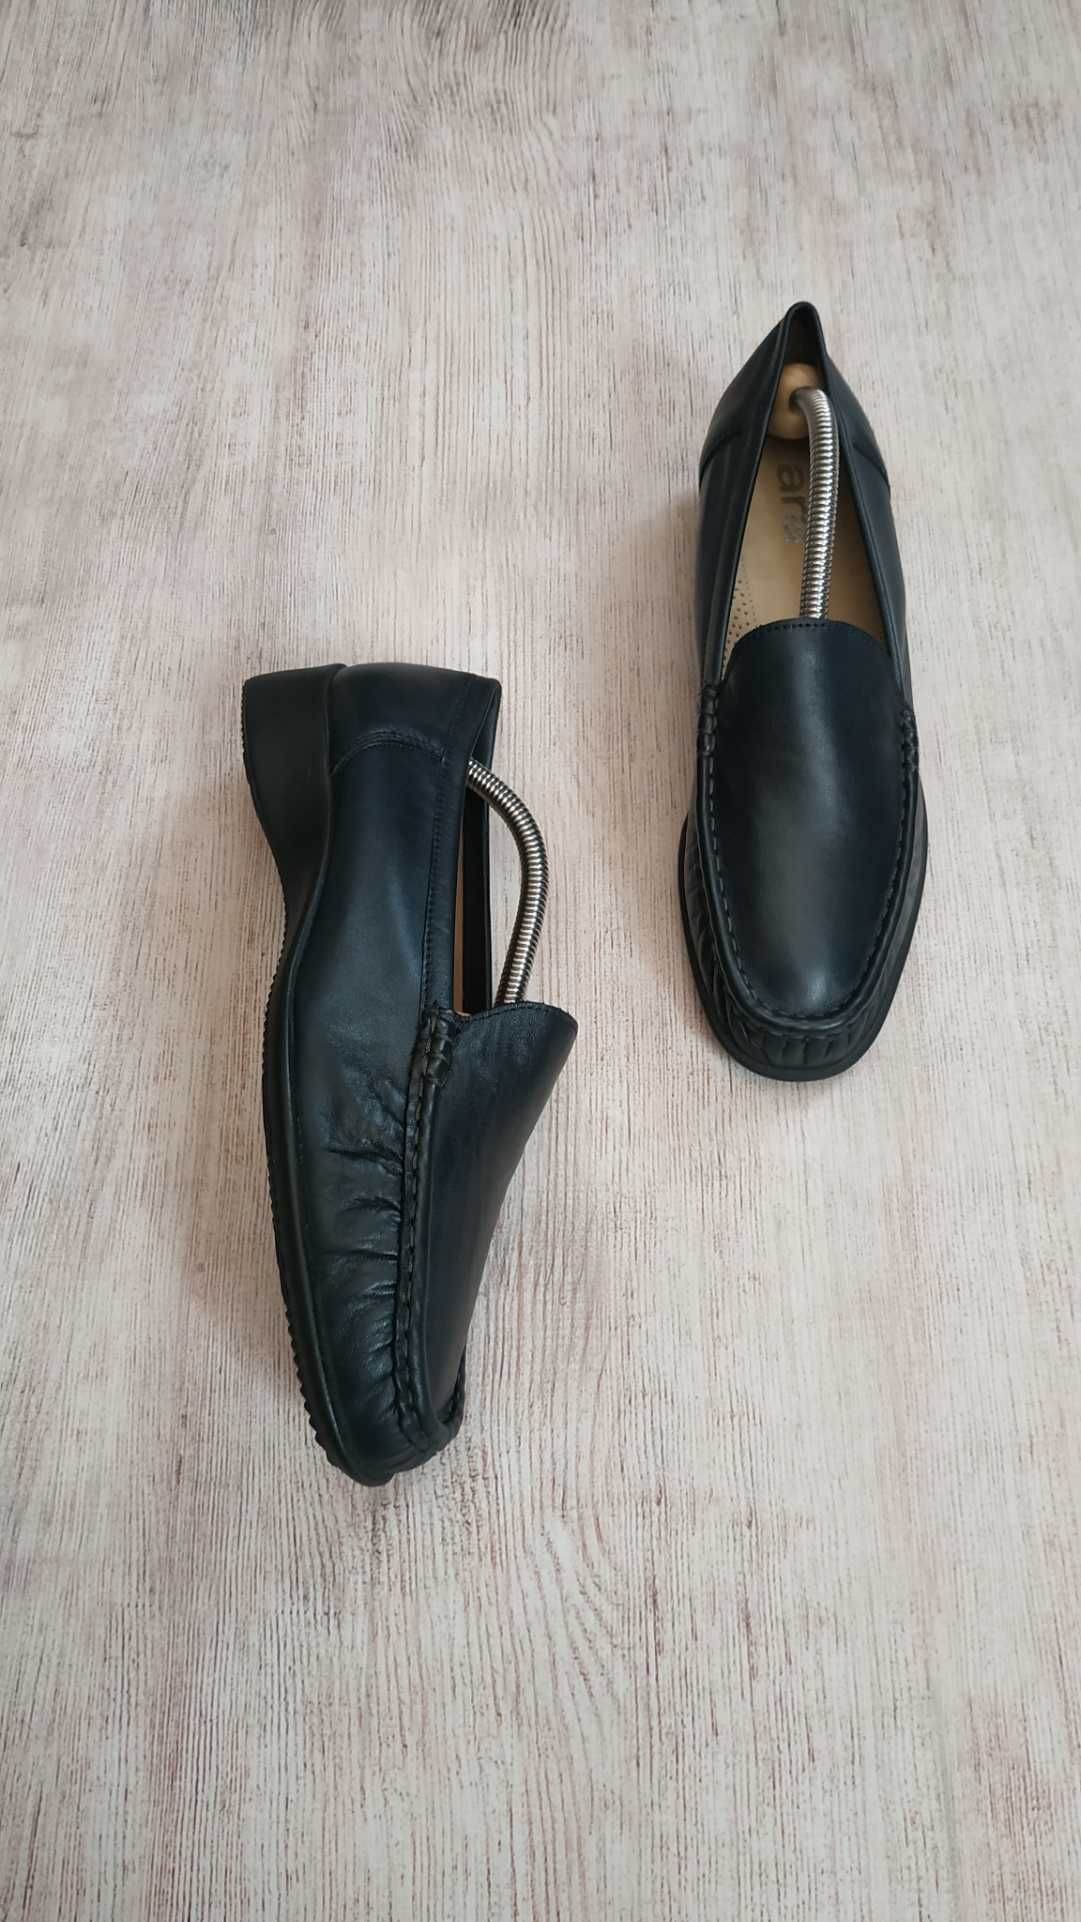 Ara кожаные туфли, лоферы в стиле loro piana мокасины  40 р